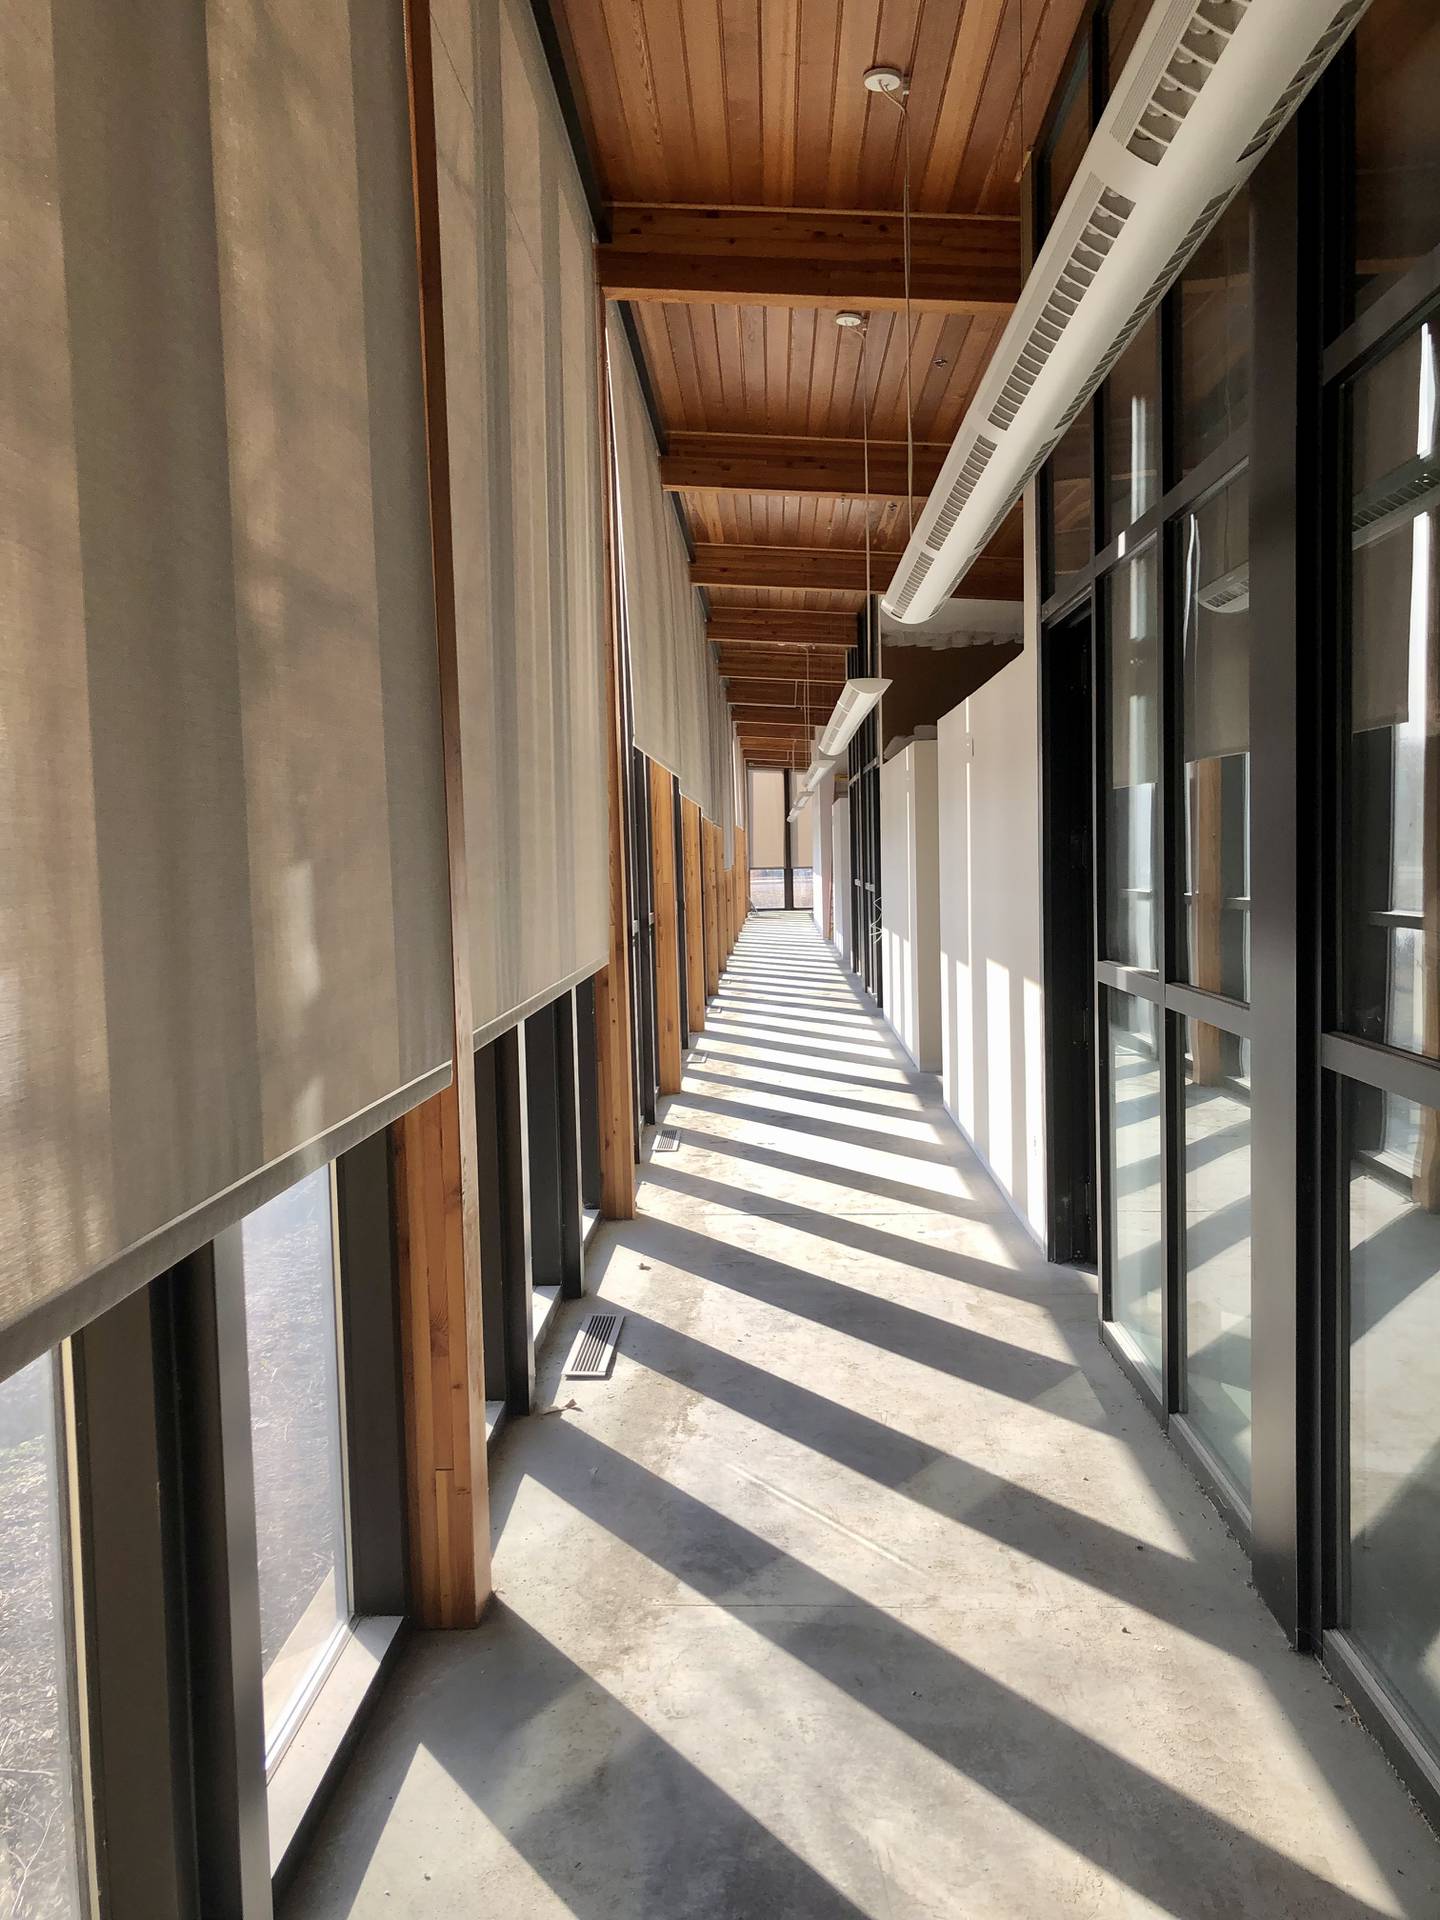 Floor to ceiling windows along the entire front corridor provide natural light (David Petesch - dpetesch@shawmedia.com)